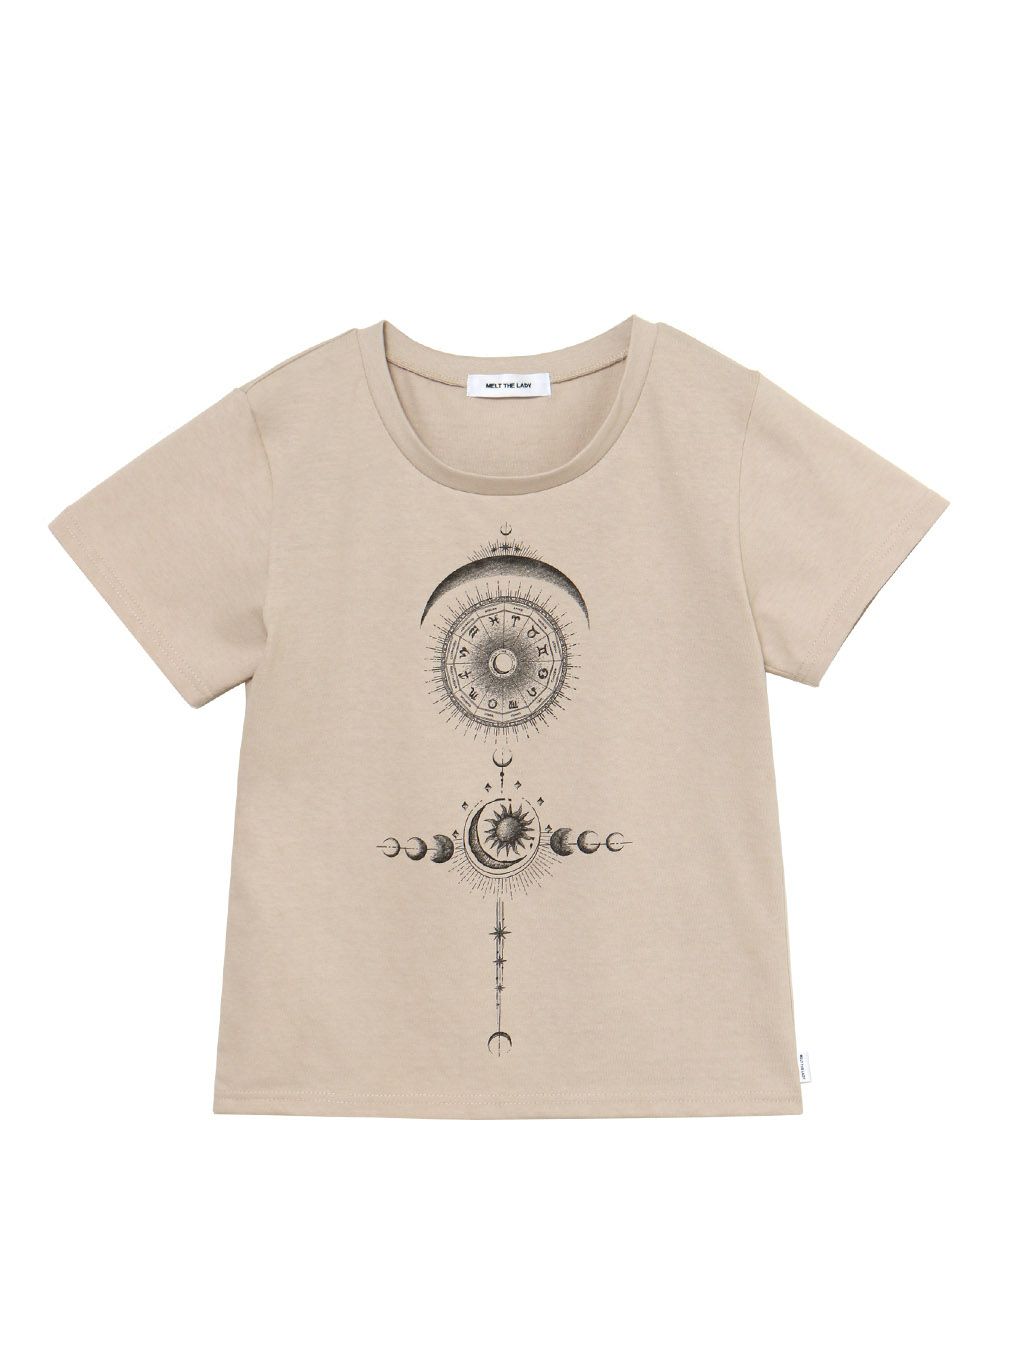 melt the lady horoscope T-shirt cropped - トップス